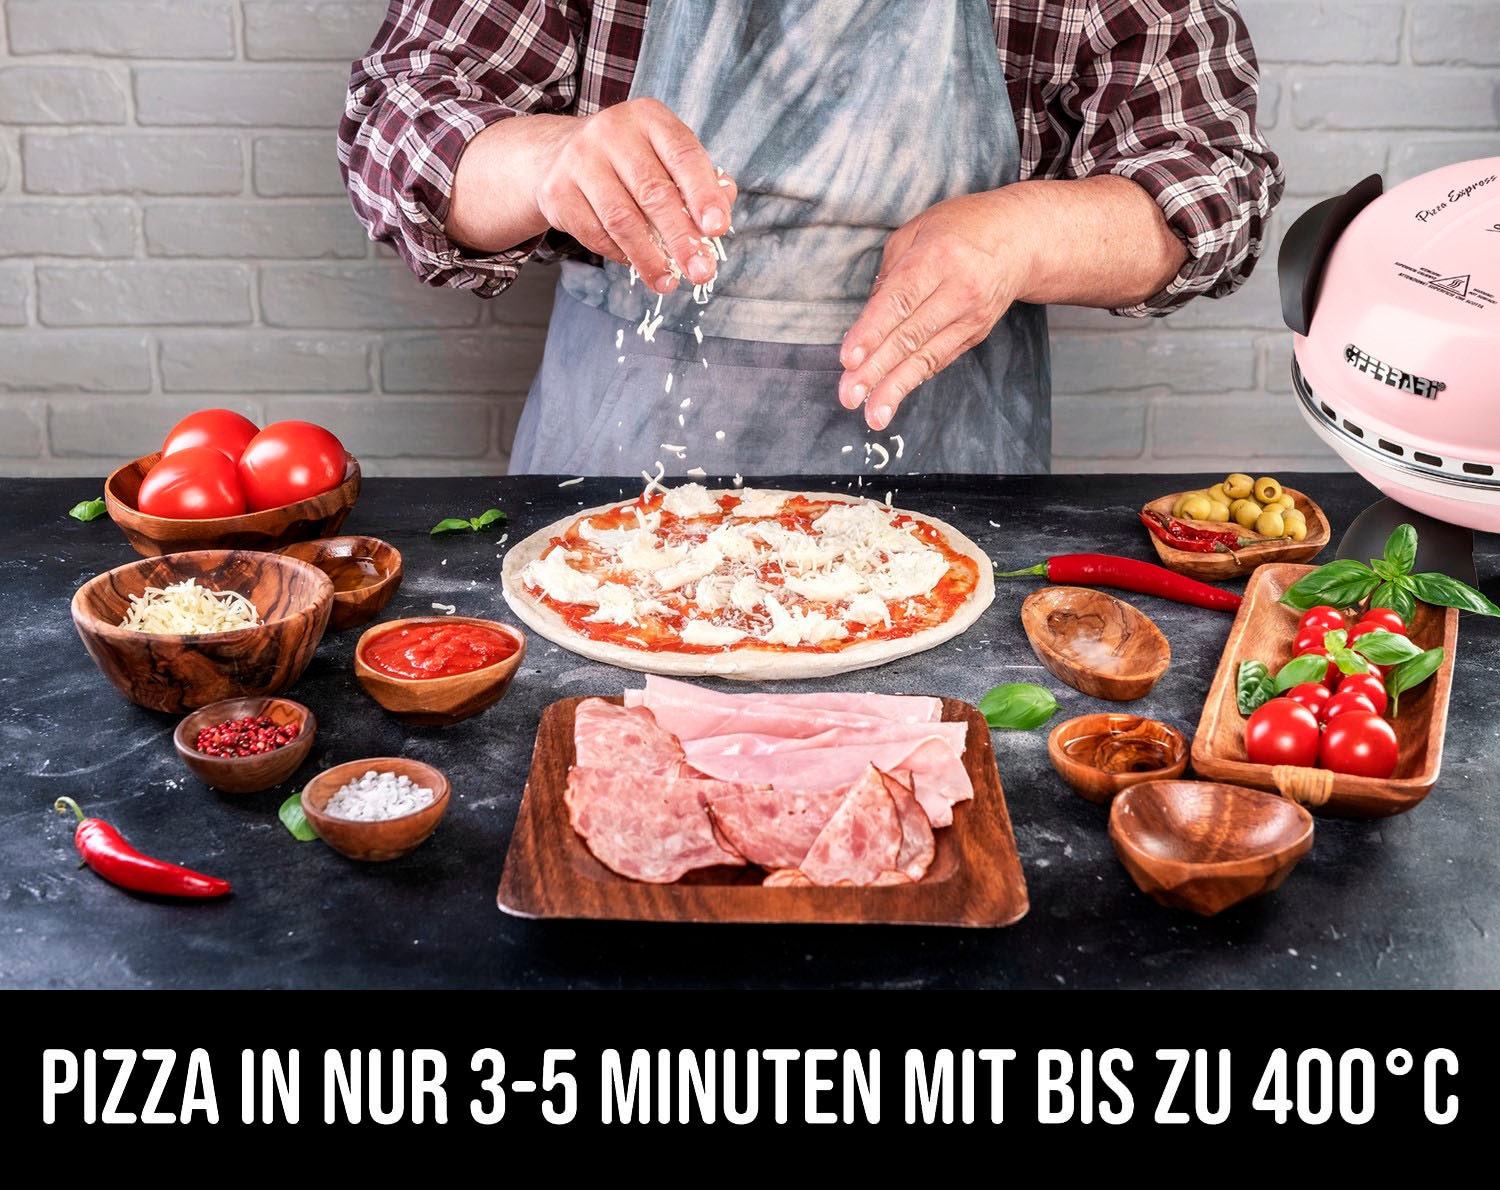 G3Ferrari Pizzaofen »Delizia G1000616 Limited Edition«, bis 400 Grad mit feuerfestem Naturstein